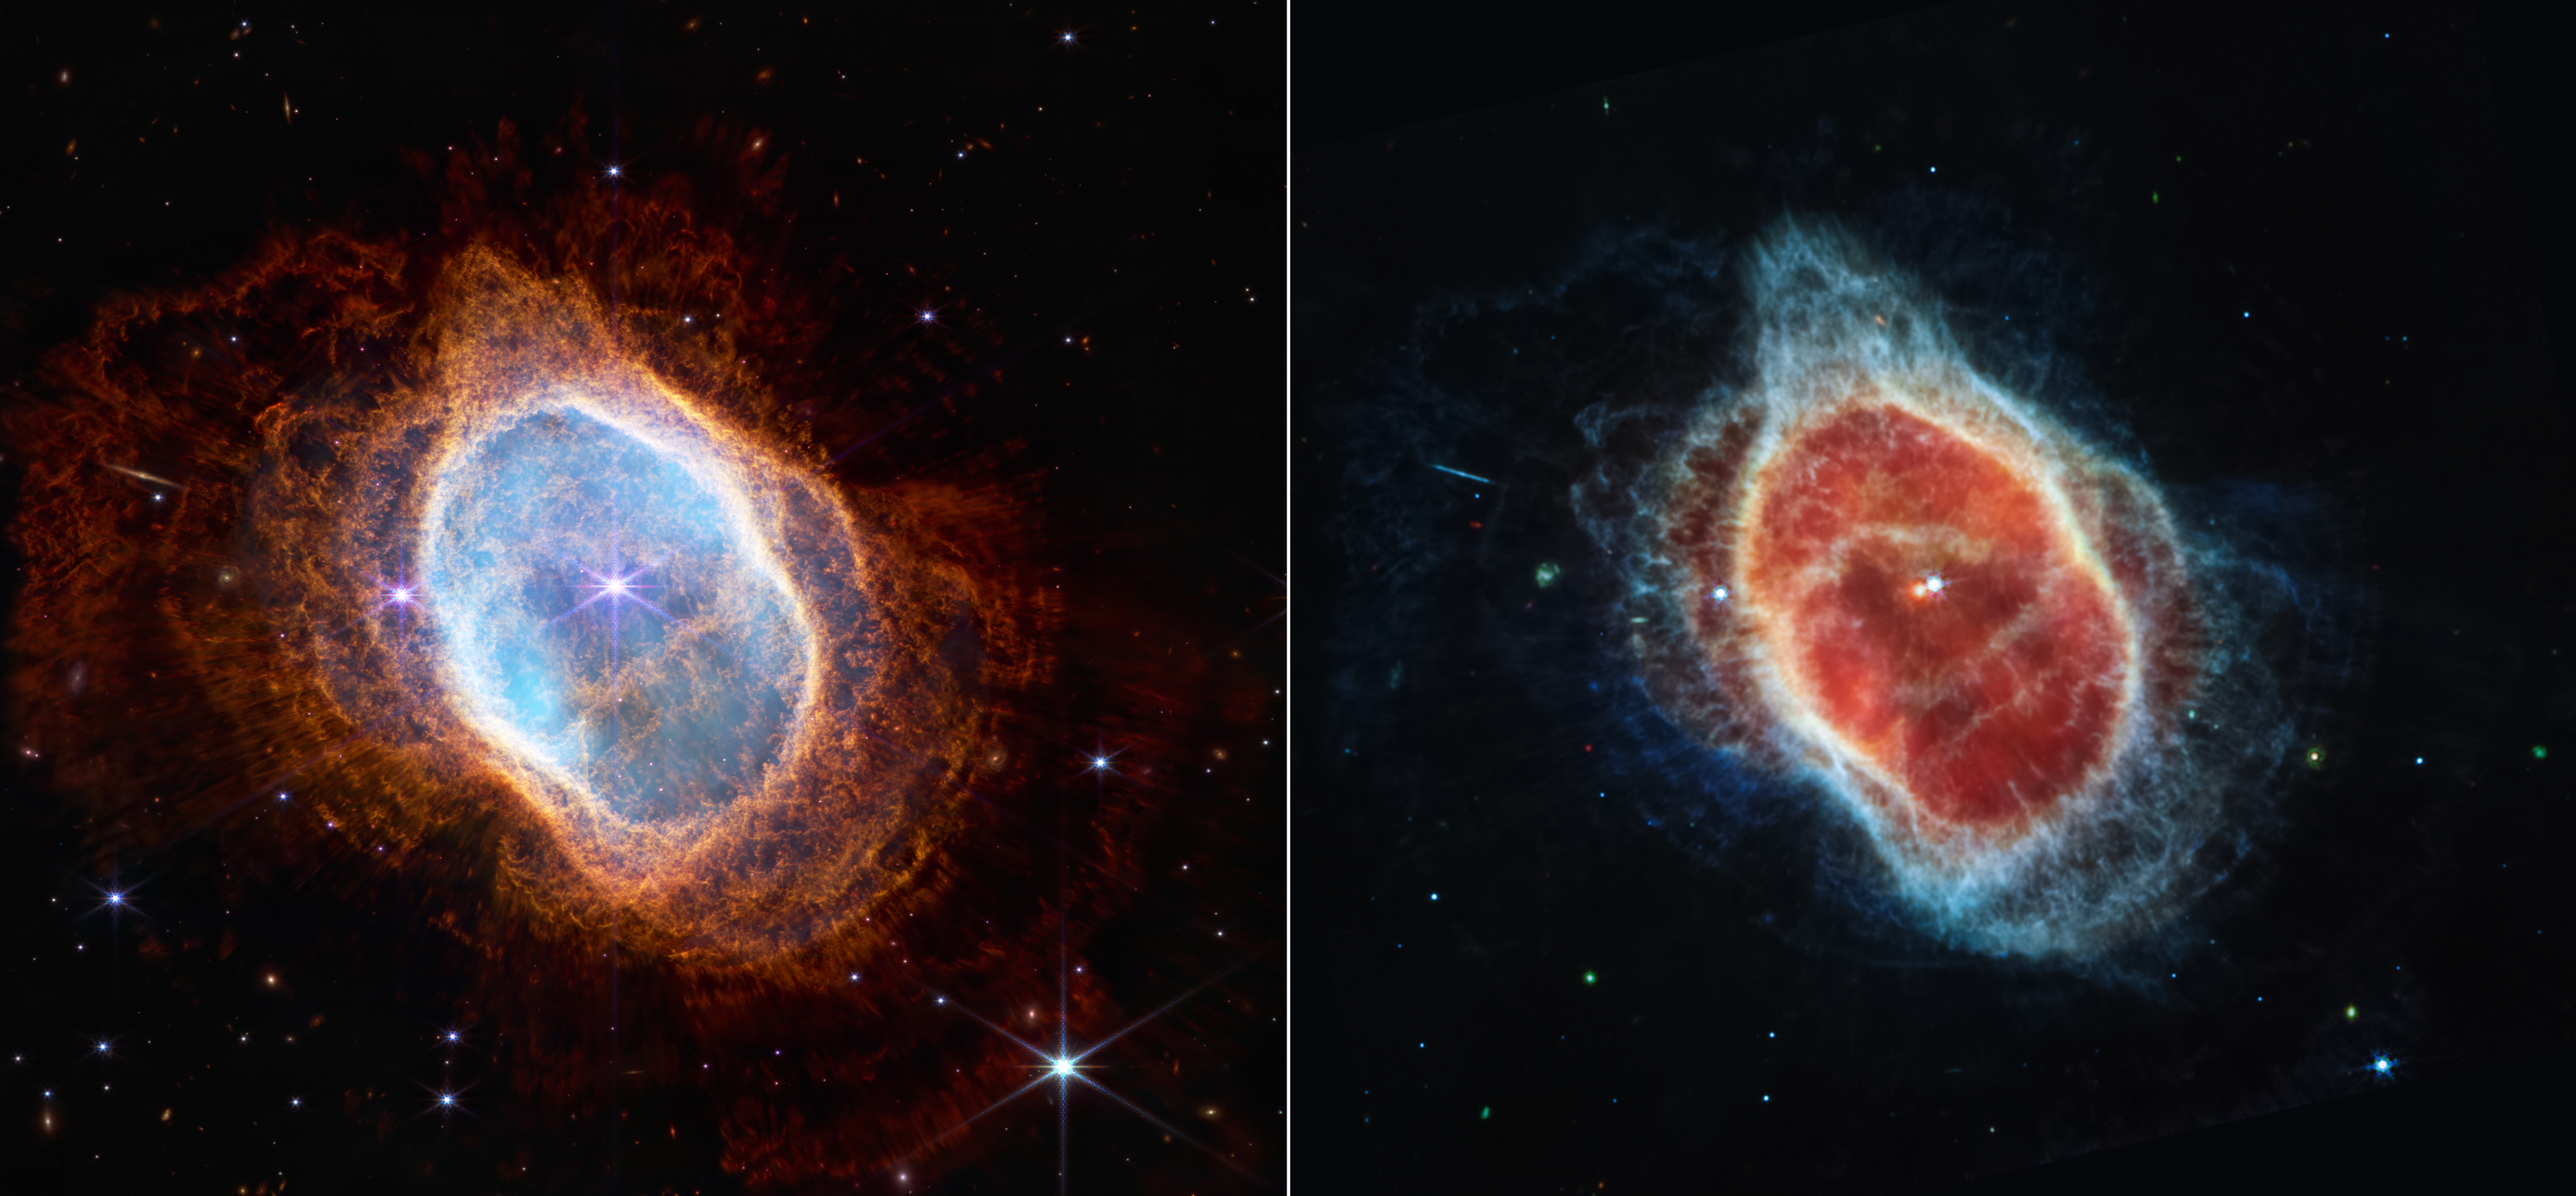 距離我們約2000光年的南環狀星雲NGC3132。圖片來源：NASA官網